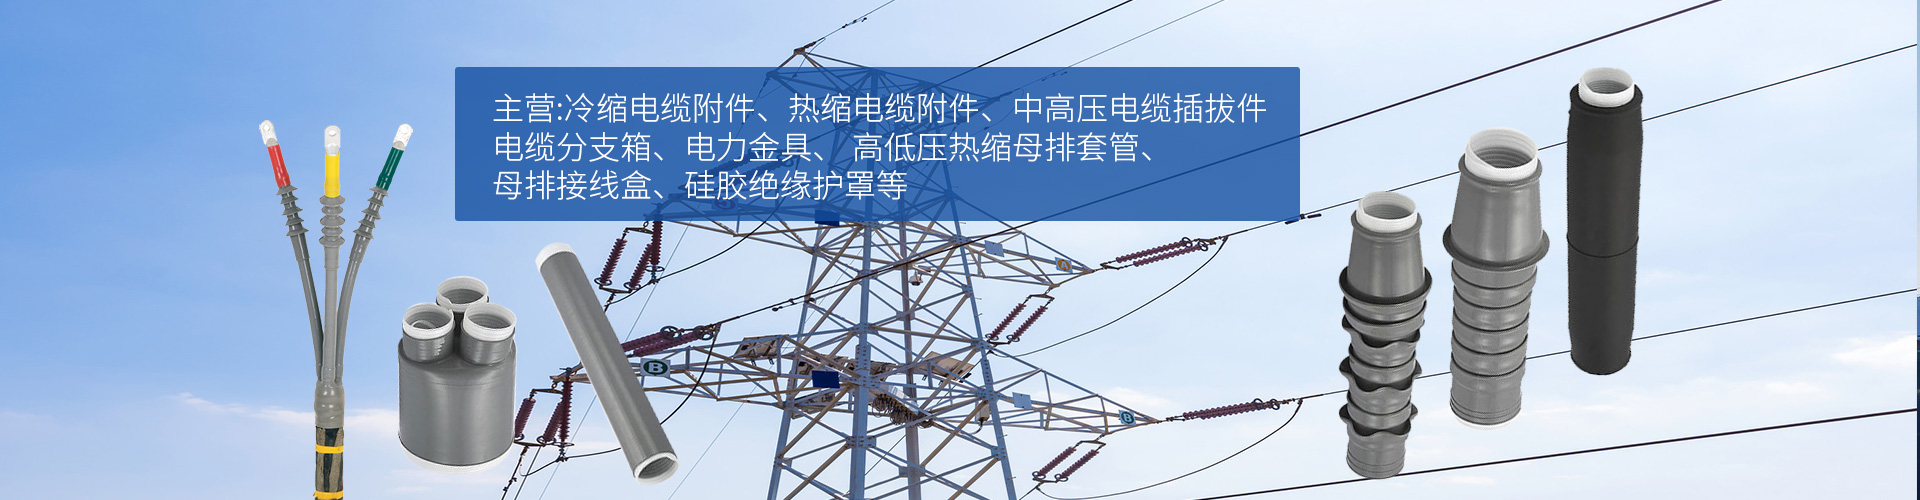 蘇州電纜附件廠家宣傳圖